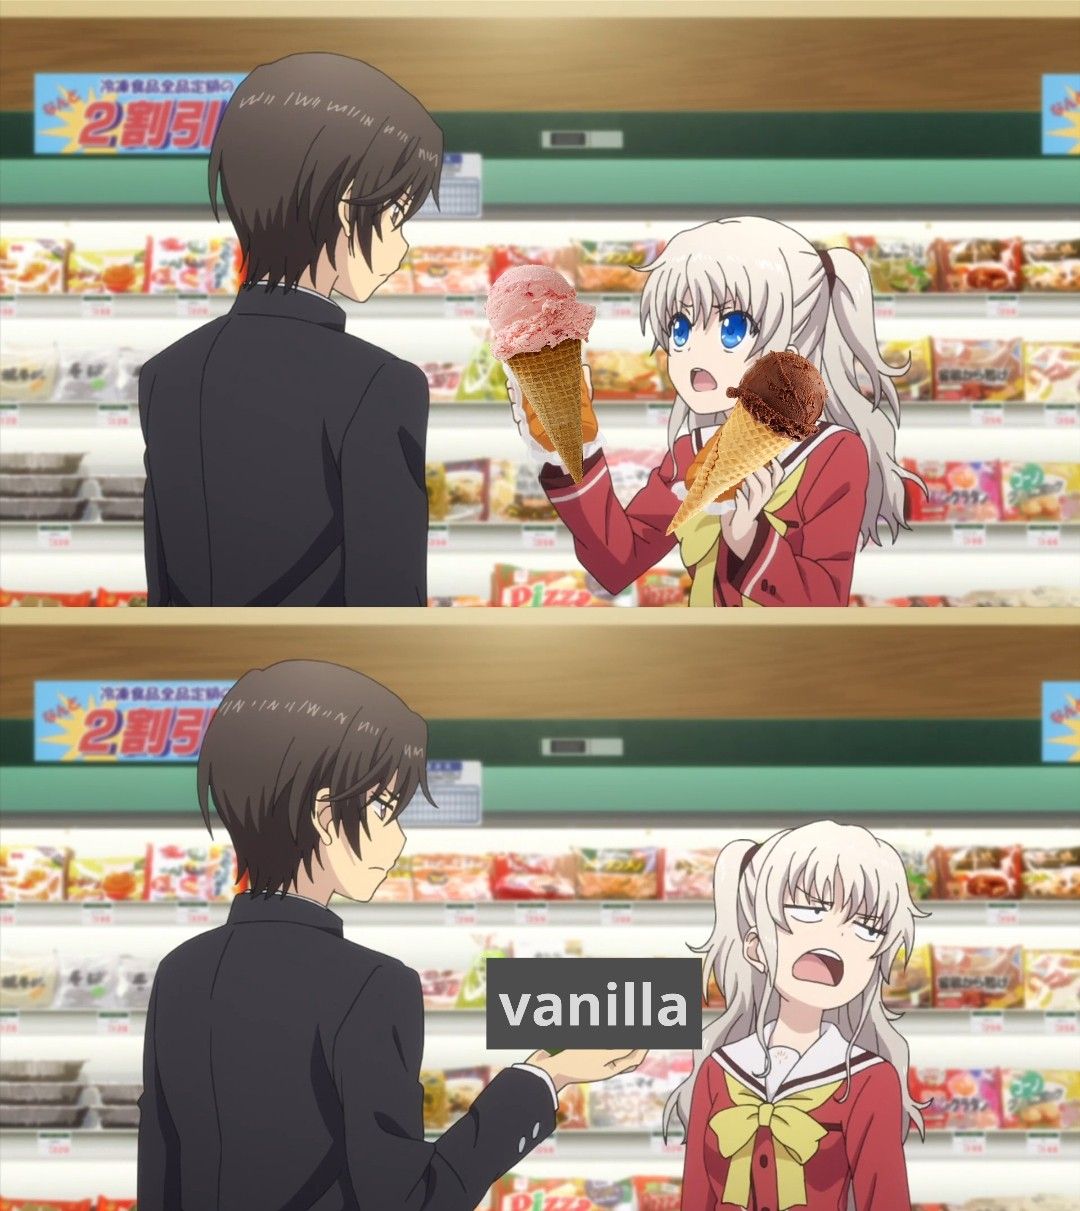 I really love vanilla